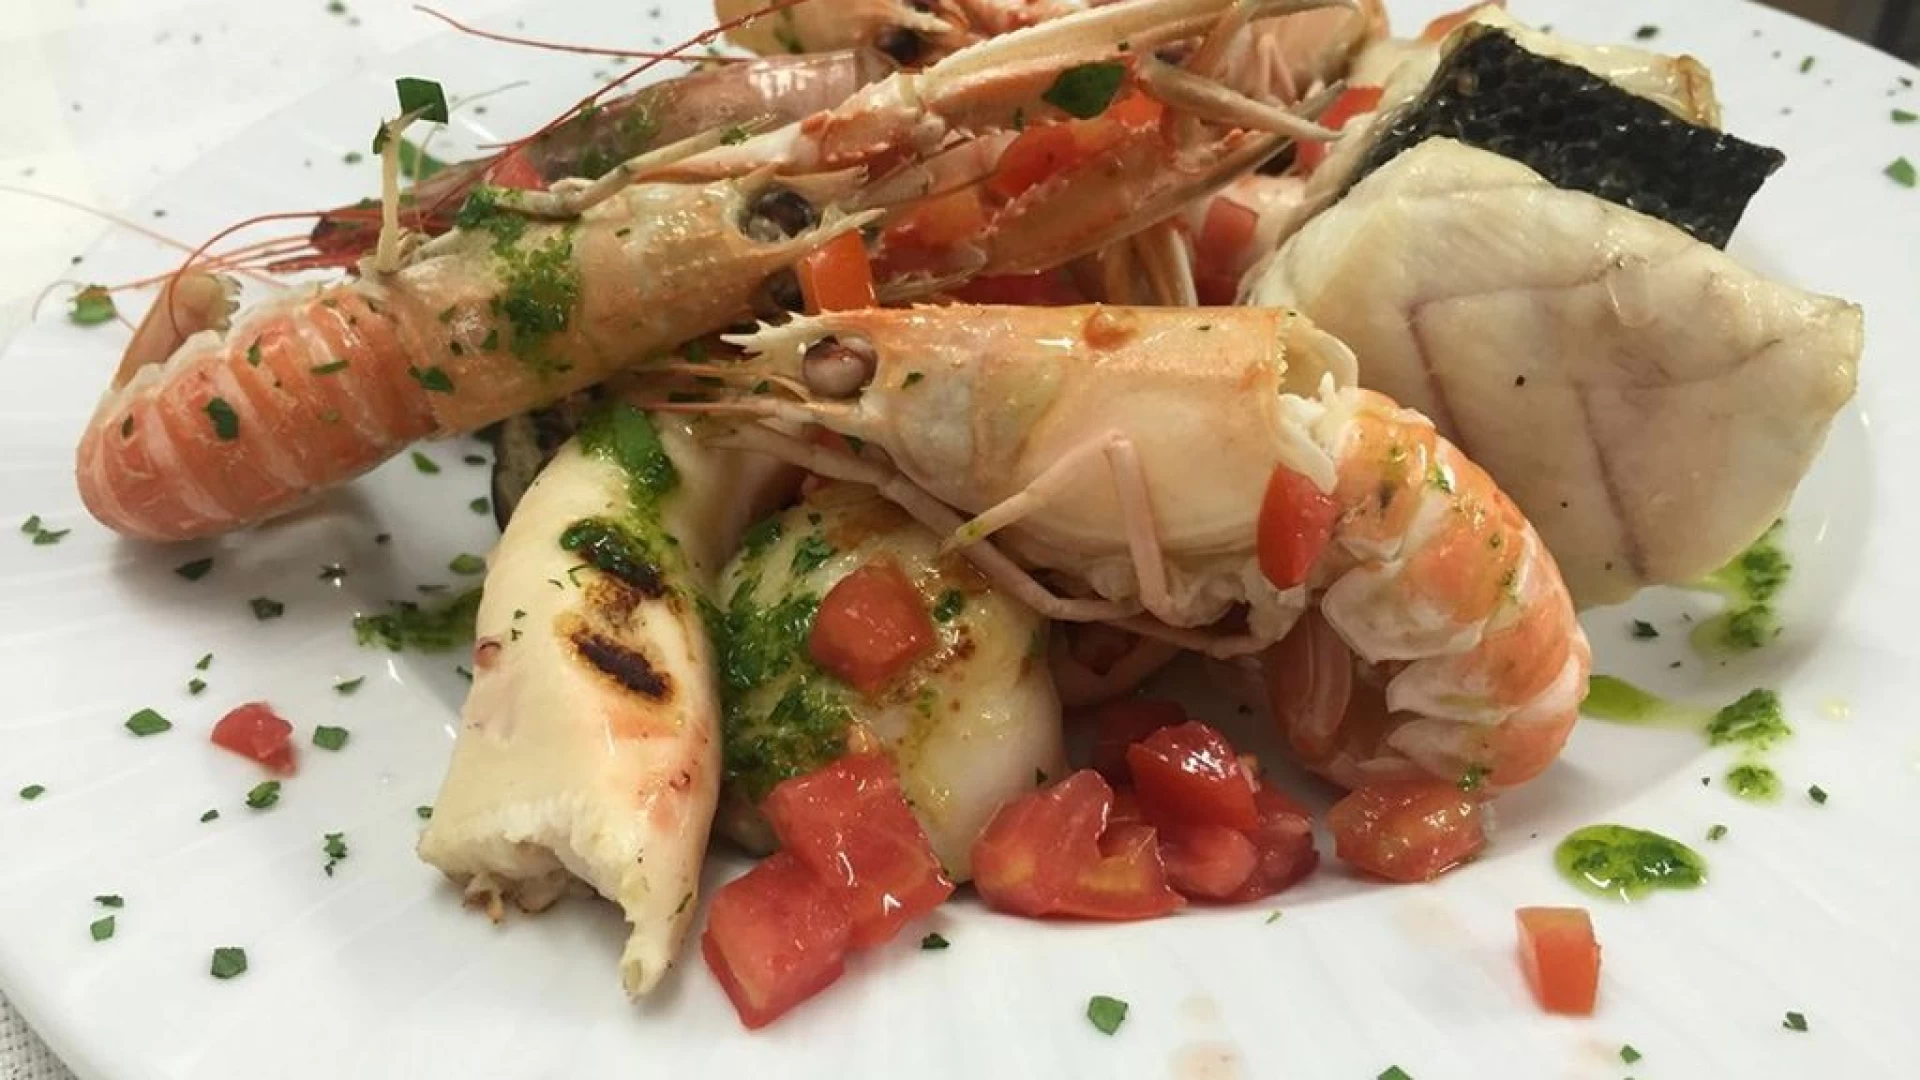 Colli a Volturno: venerdi' 17 maggio cena a base di pesce al Ristorante-Pizzeria "La Falconara". Prenota il tuo tavolo.